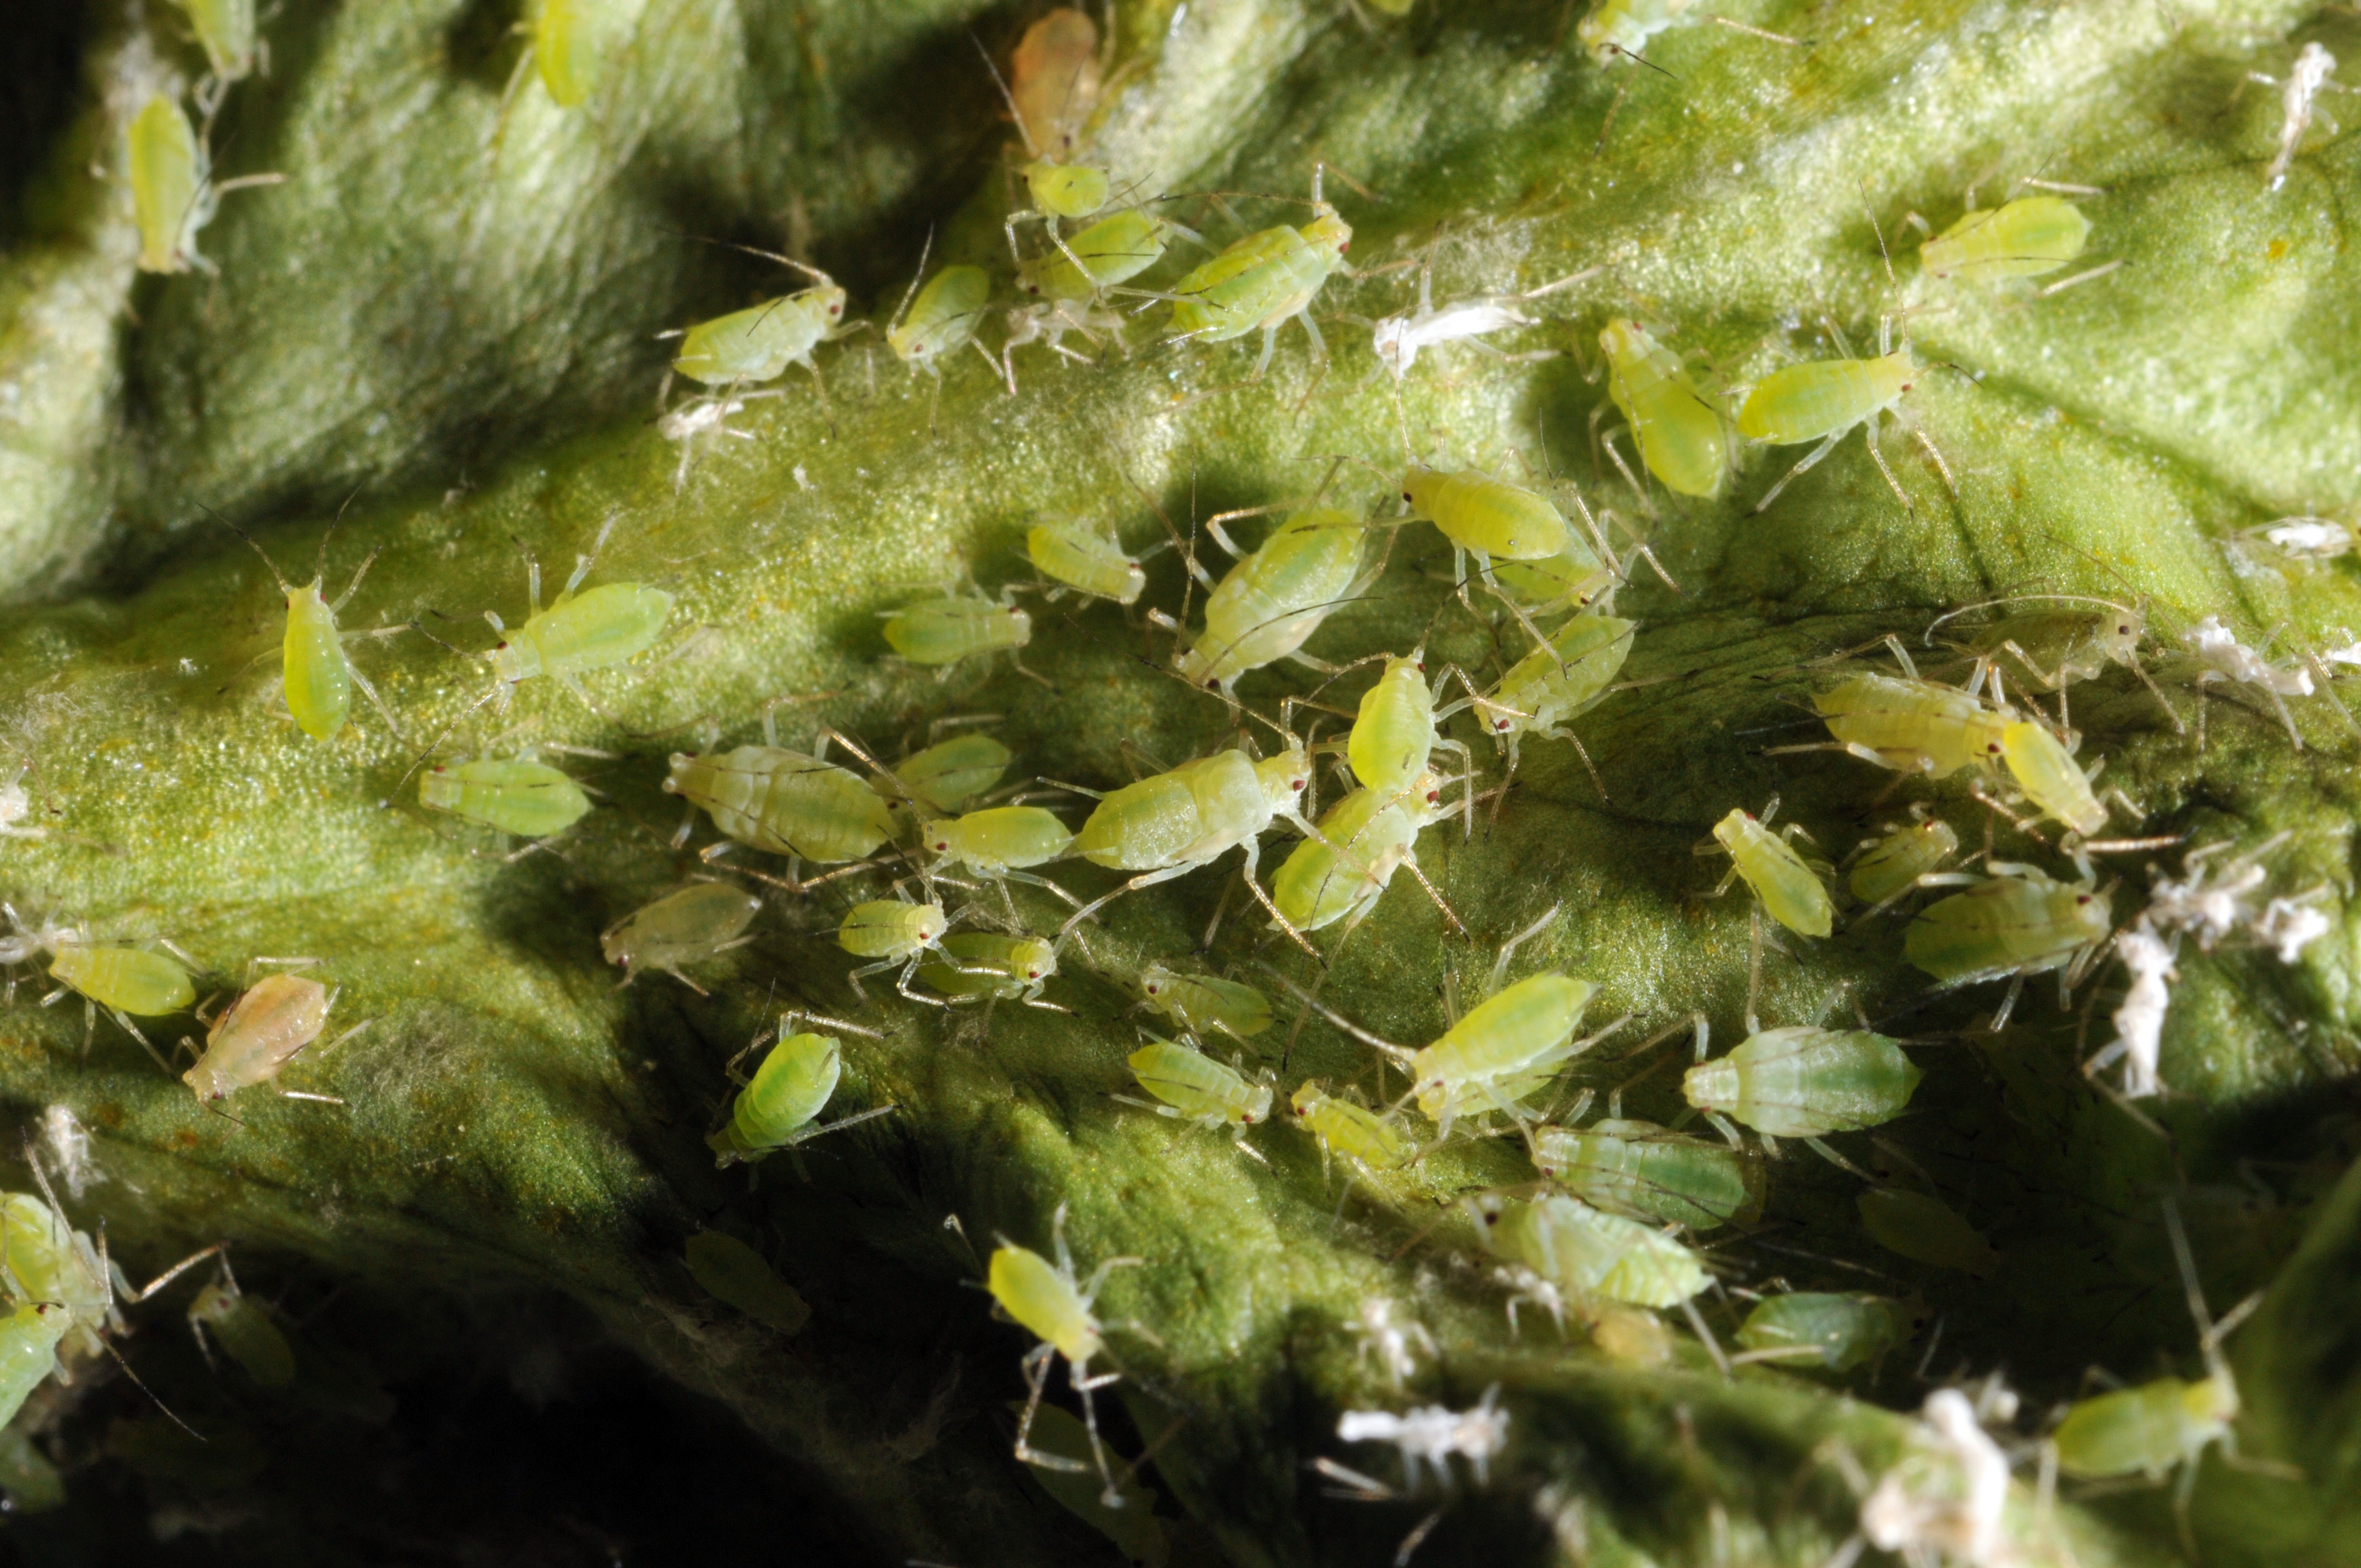 Aphids close-up on lettuce leaf